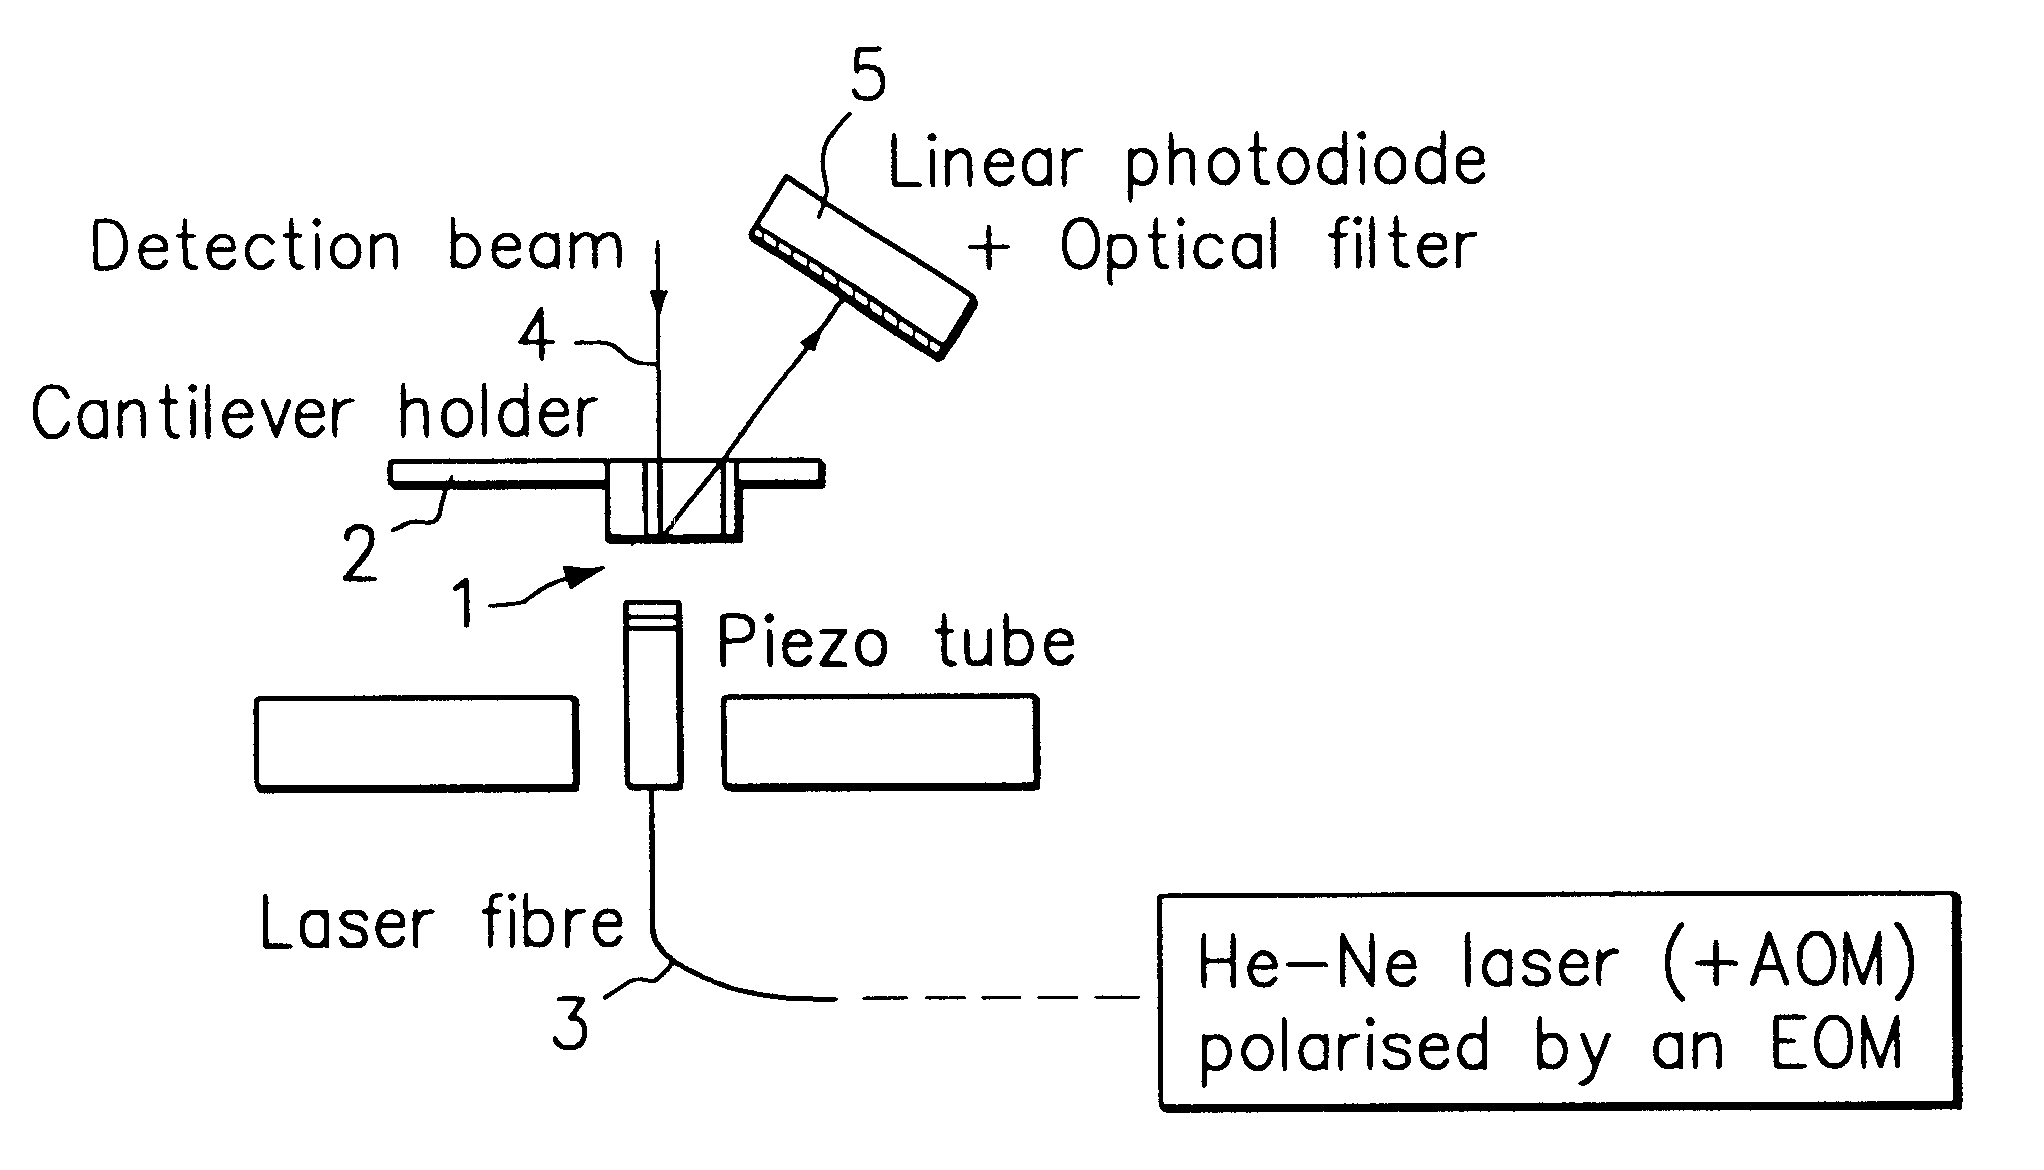 Opto-mechanical device